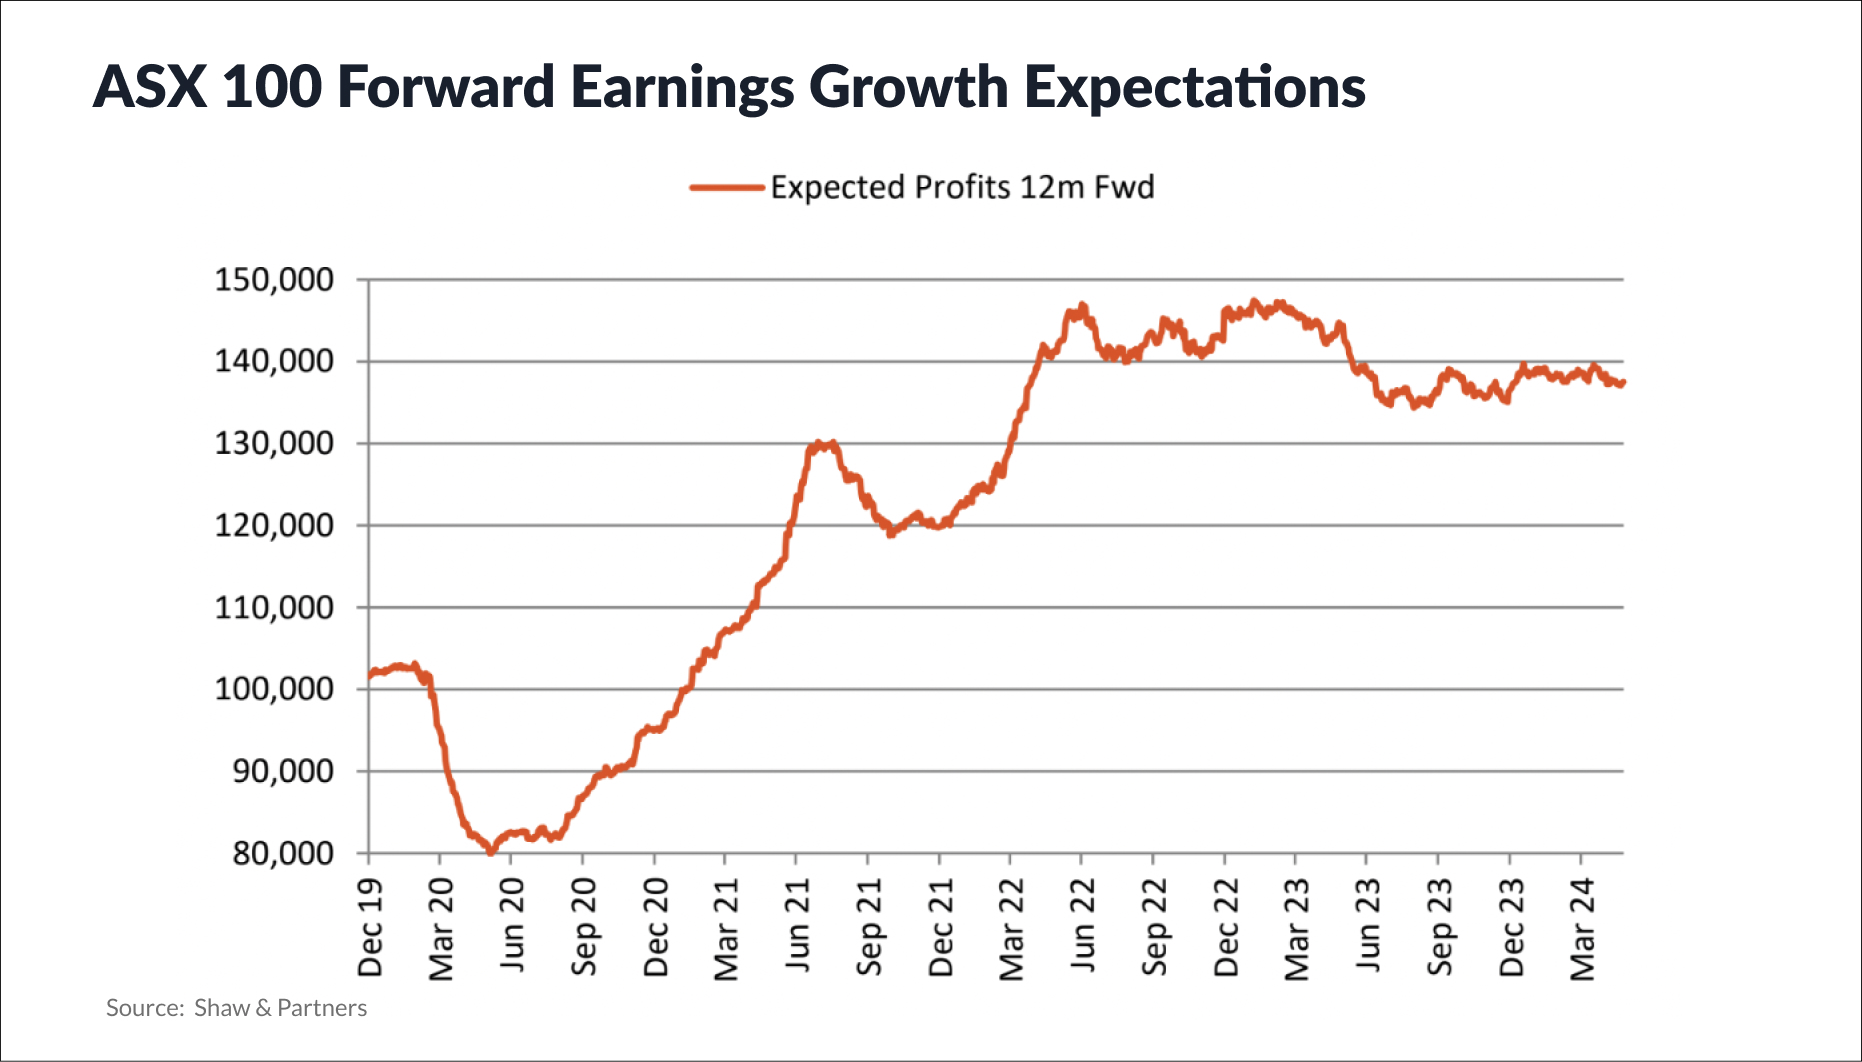 ASX 100 Forward Earnings Growth Expectations